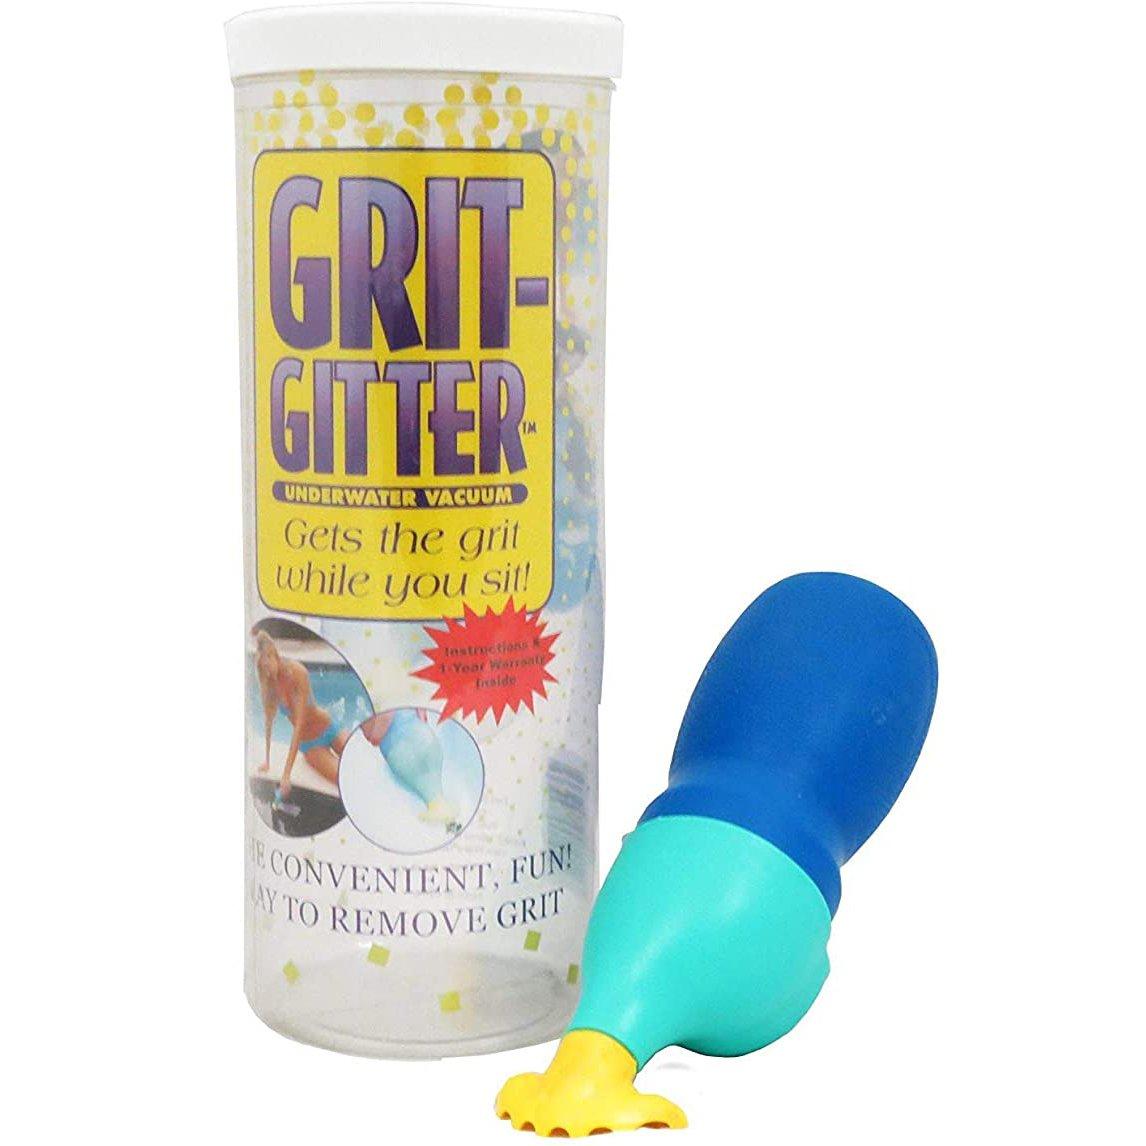 Water Tech  Grit Gitter